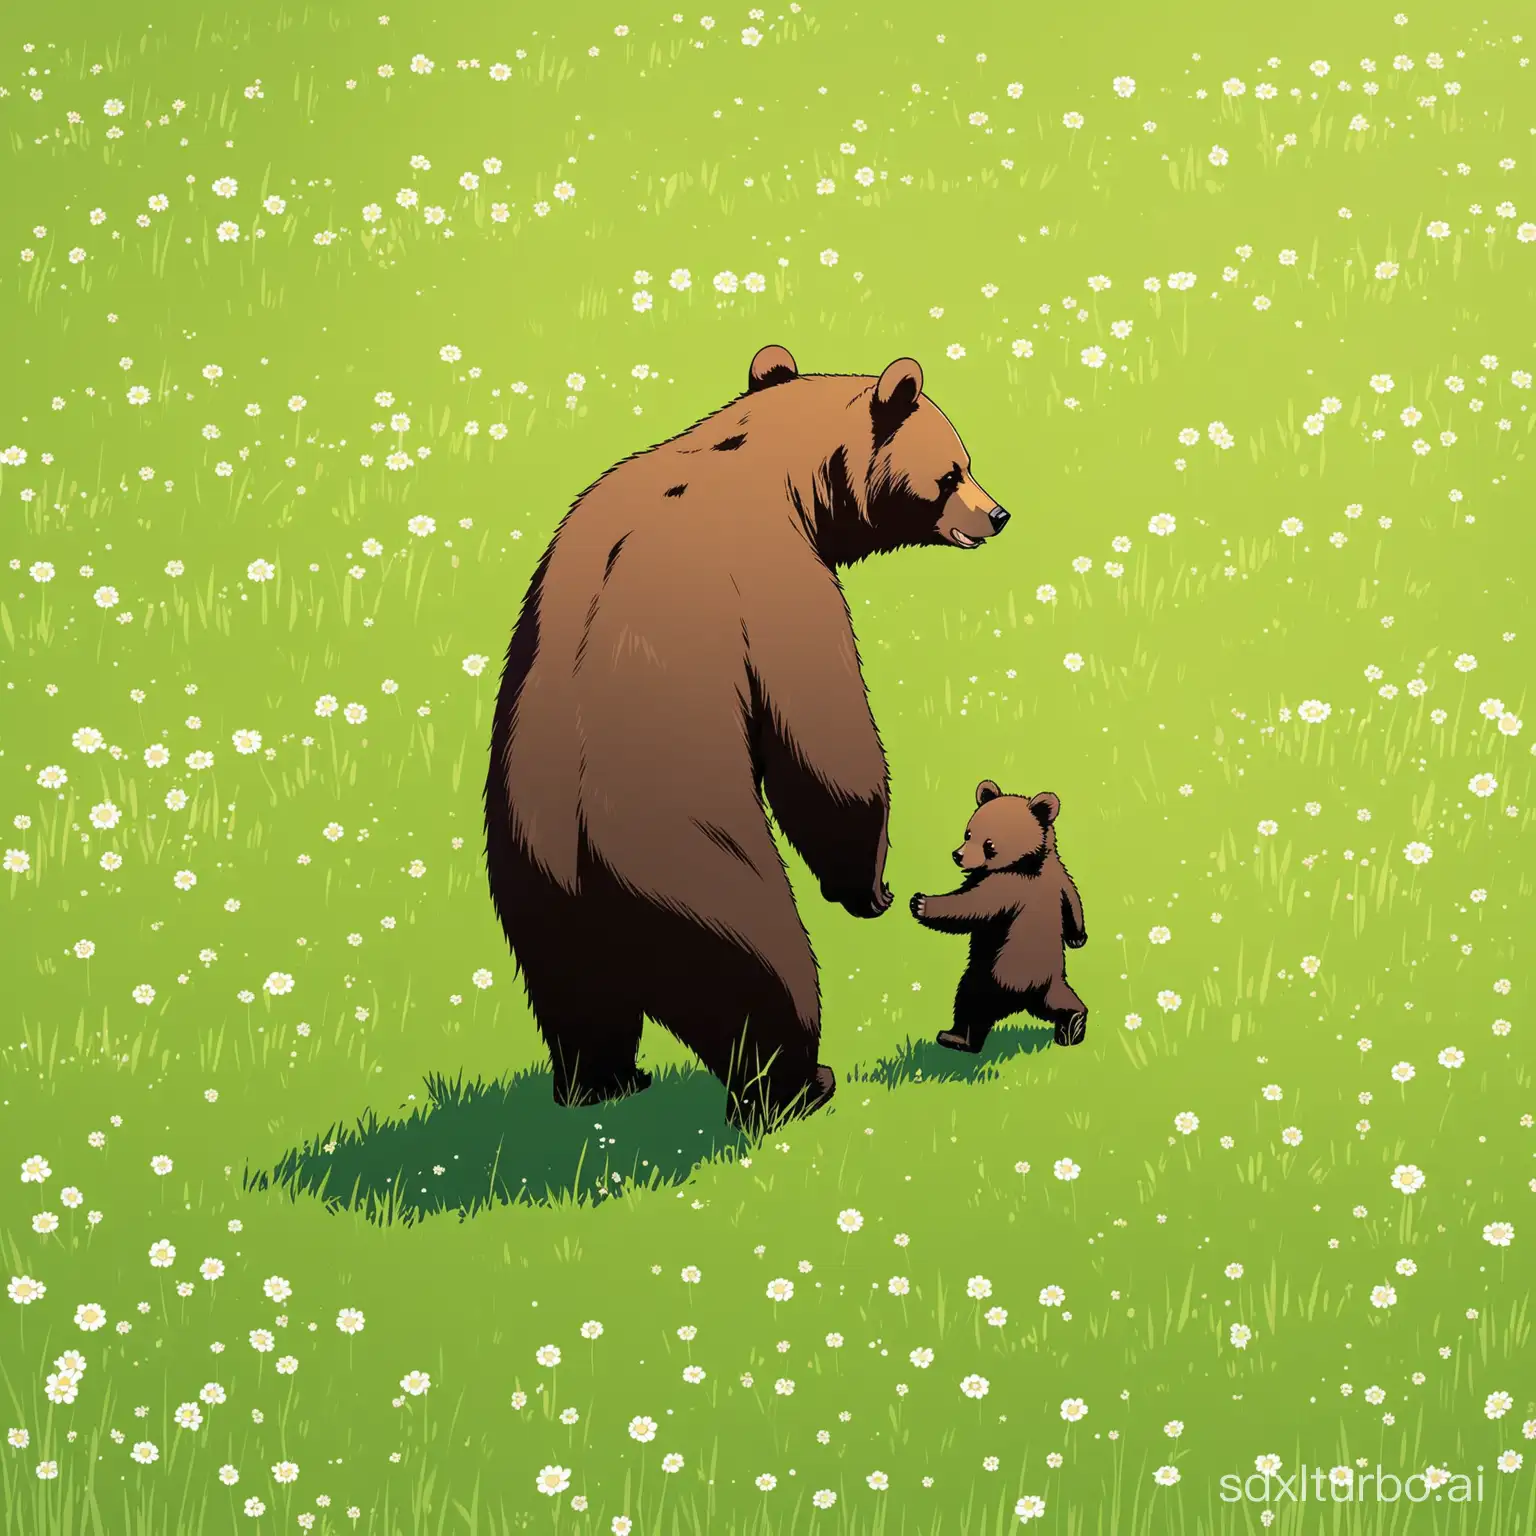 Mama bear and little cub walk on a field grass meet human with gun